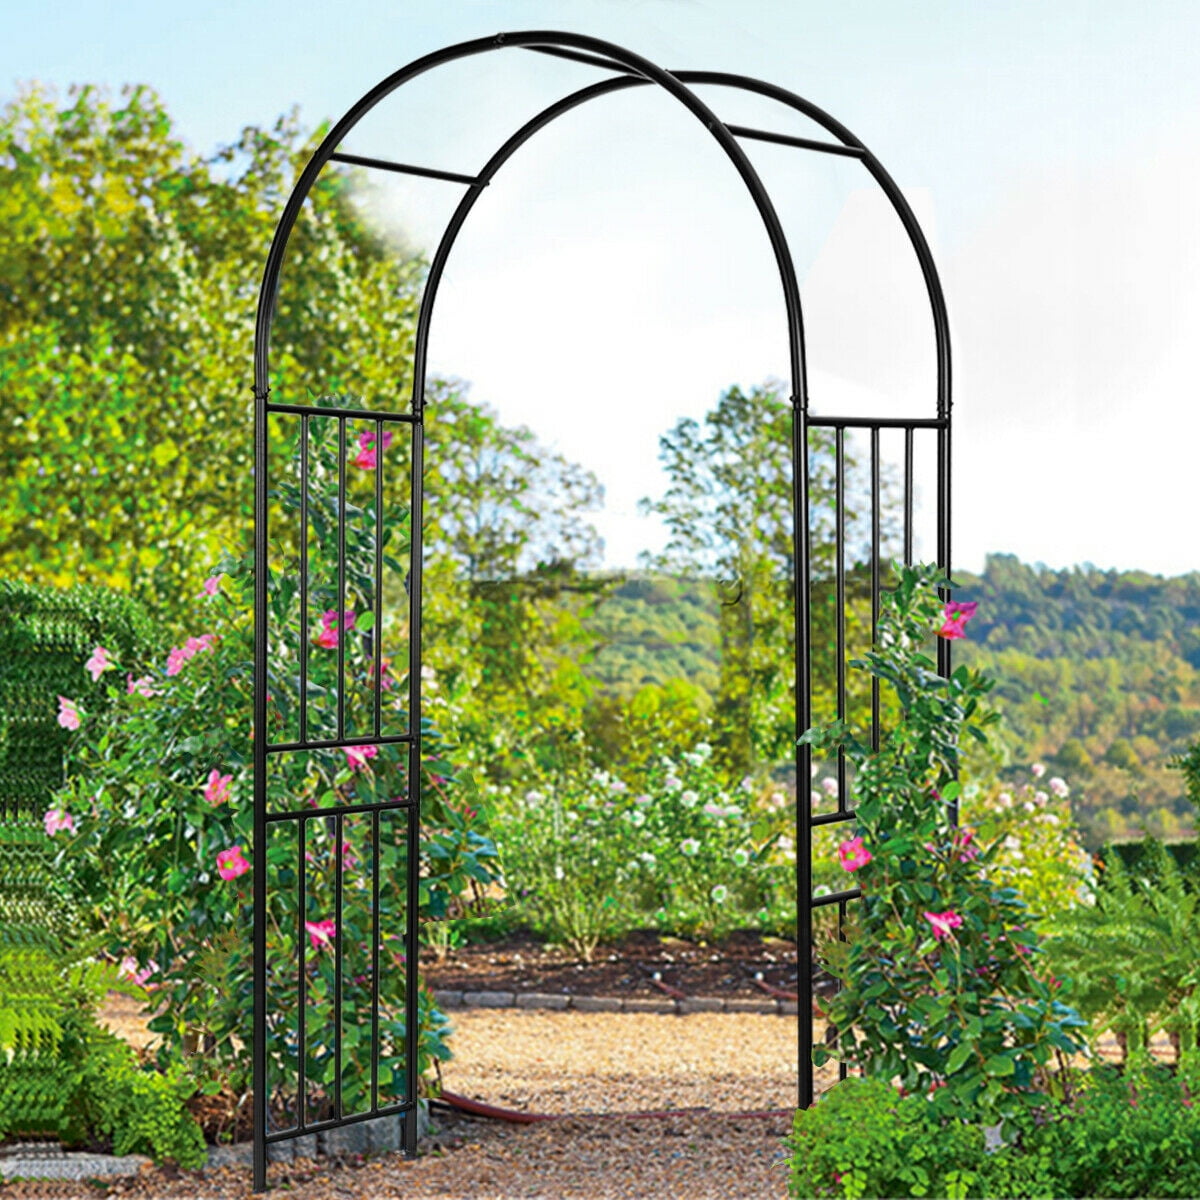 Steel Pergola Archway Outdoor Garden Trellis Metal Wedding Arch Plant Arbor US 